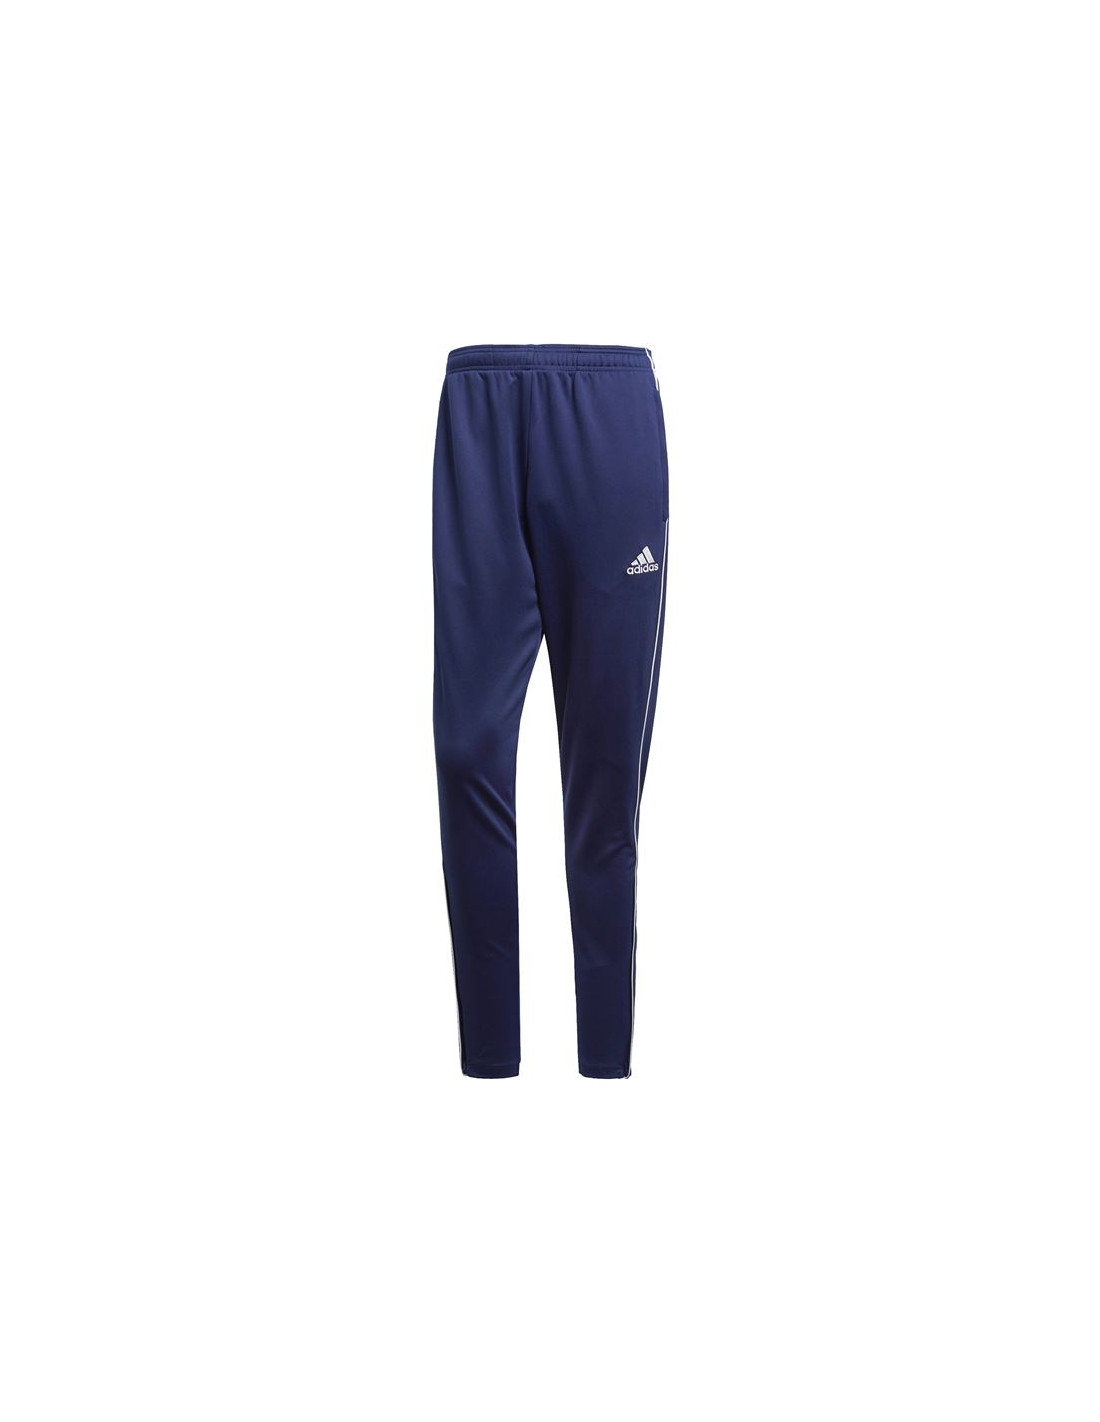 Pantalones de fútbol adidas entrenamiento core 18 m dark blue/whi